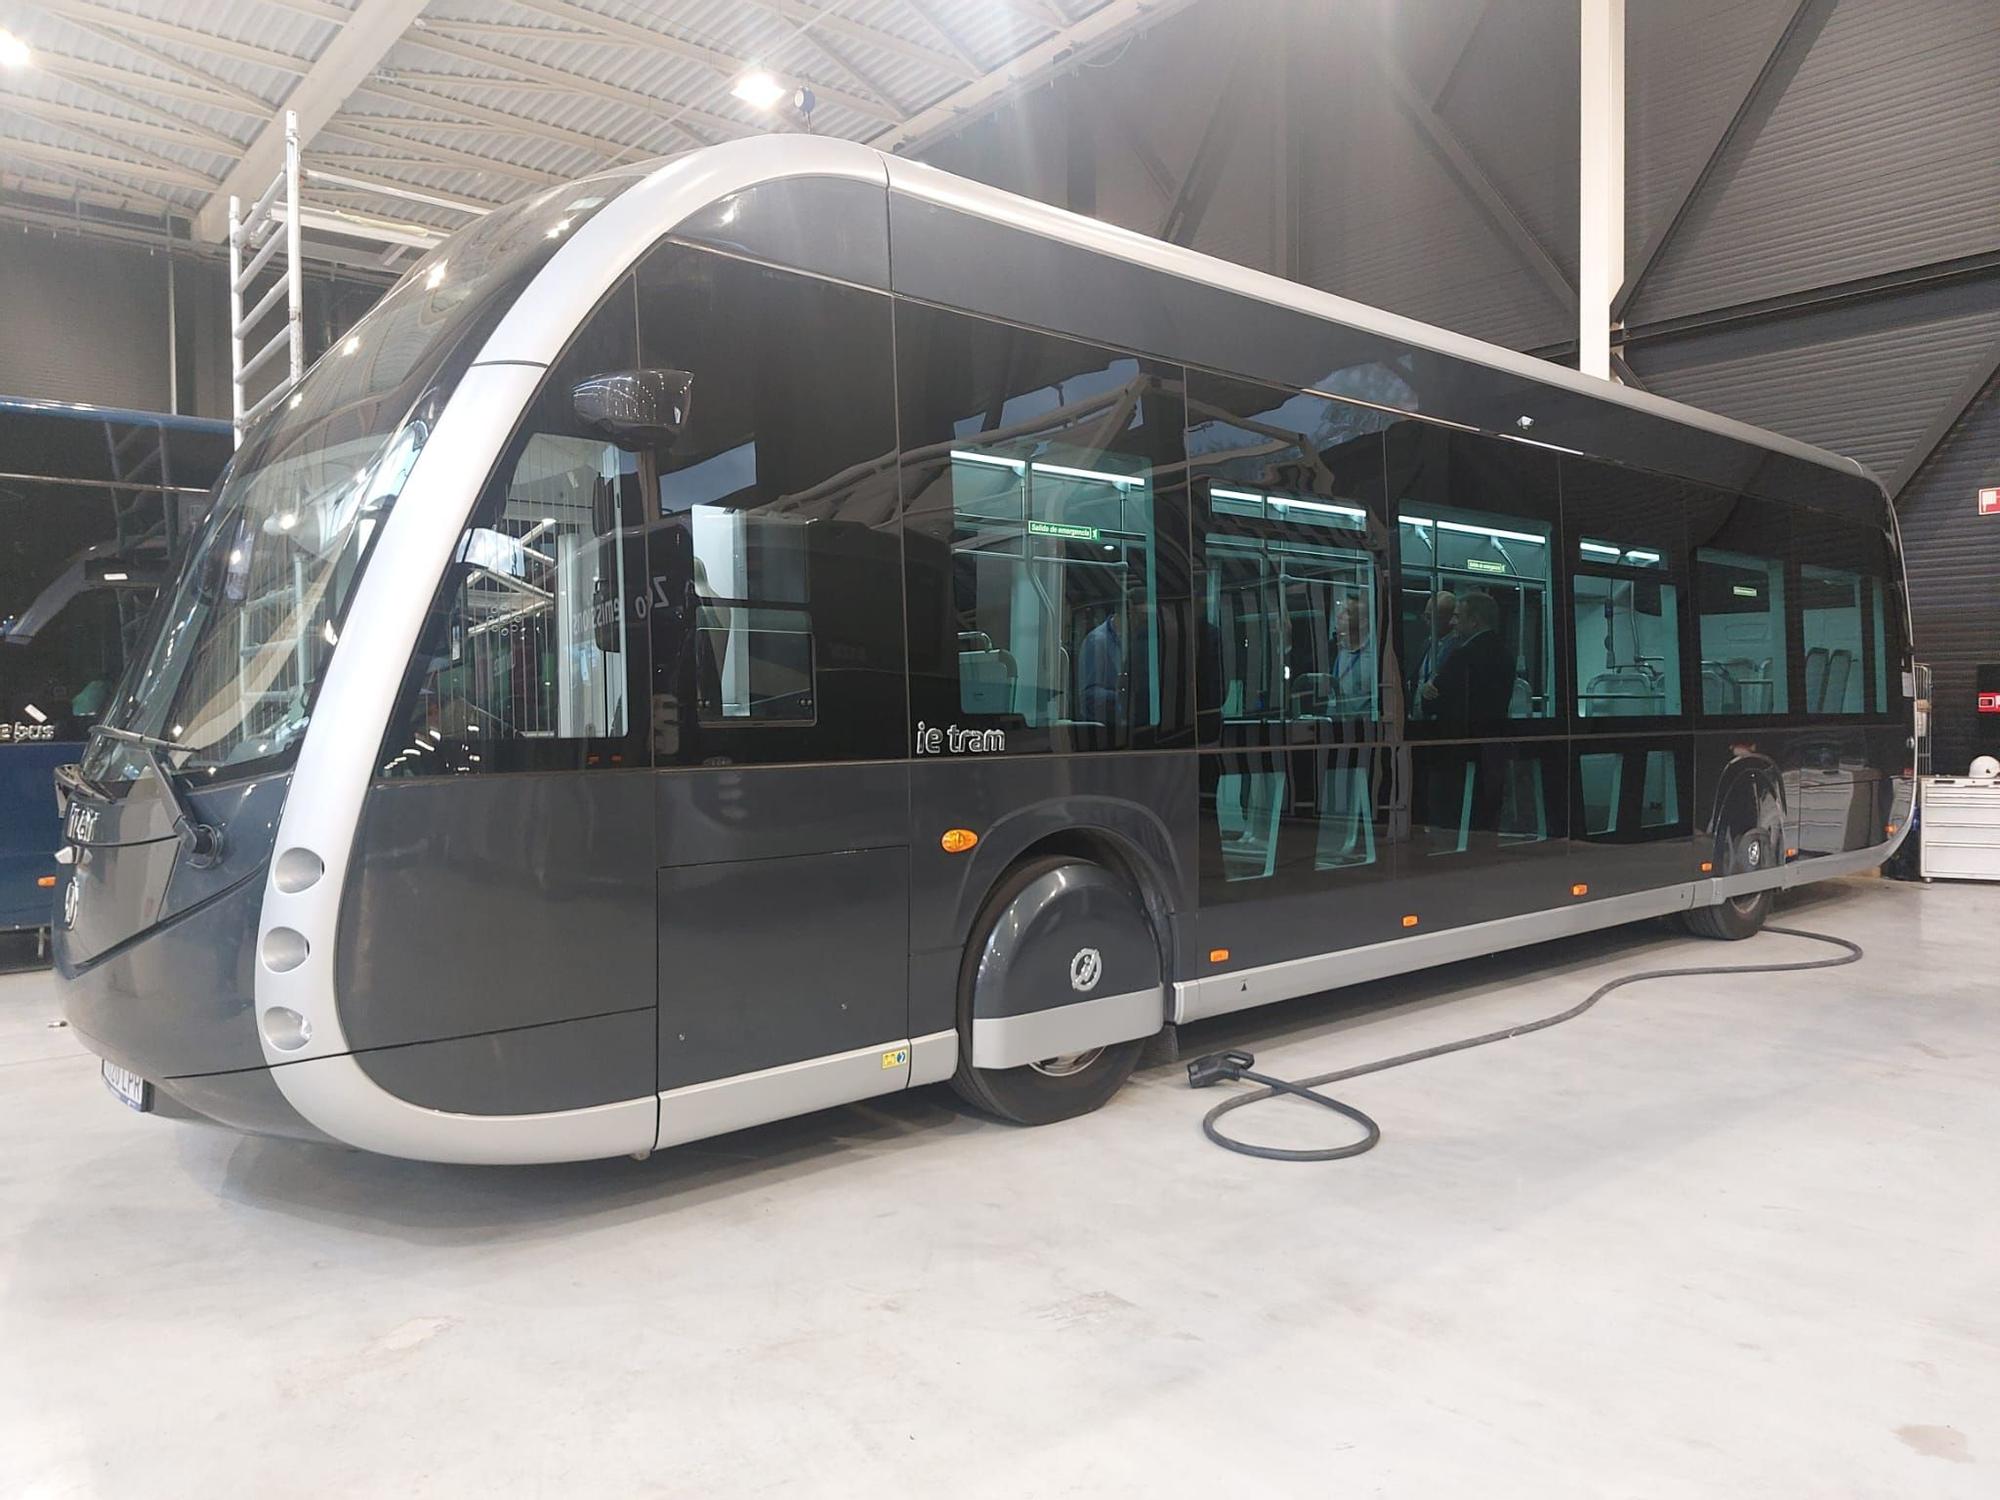 Las fotos de los nuevos buses eléctricos de Palma: diseño de tranvía y aspecto futurista